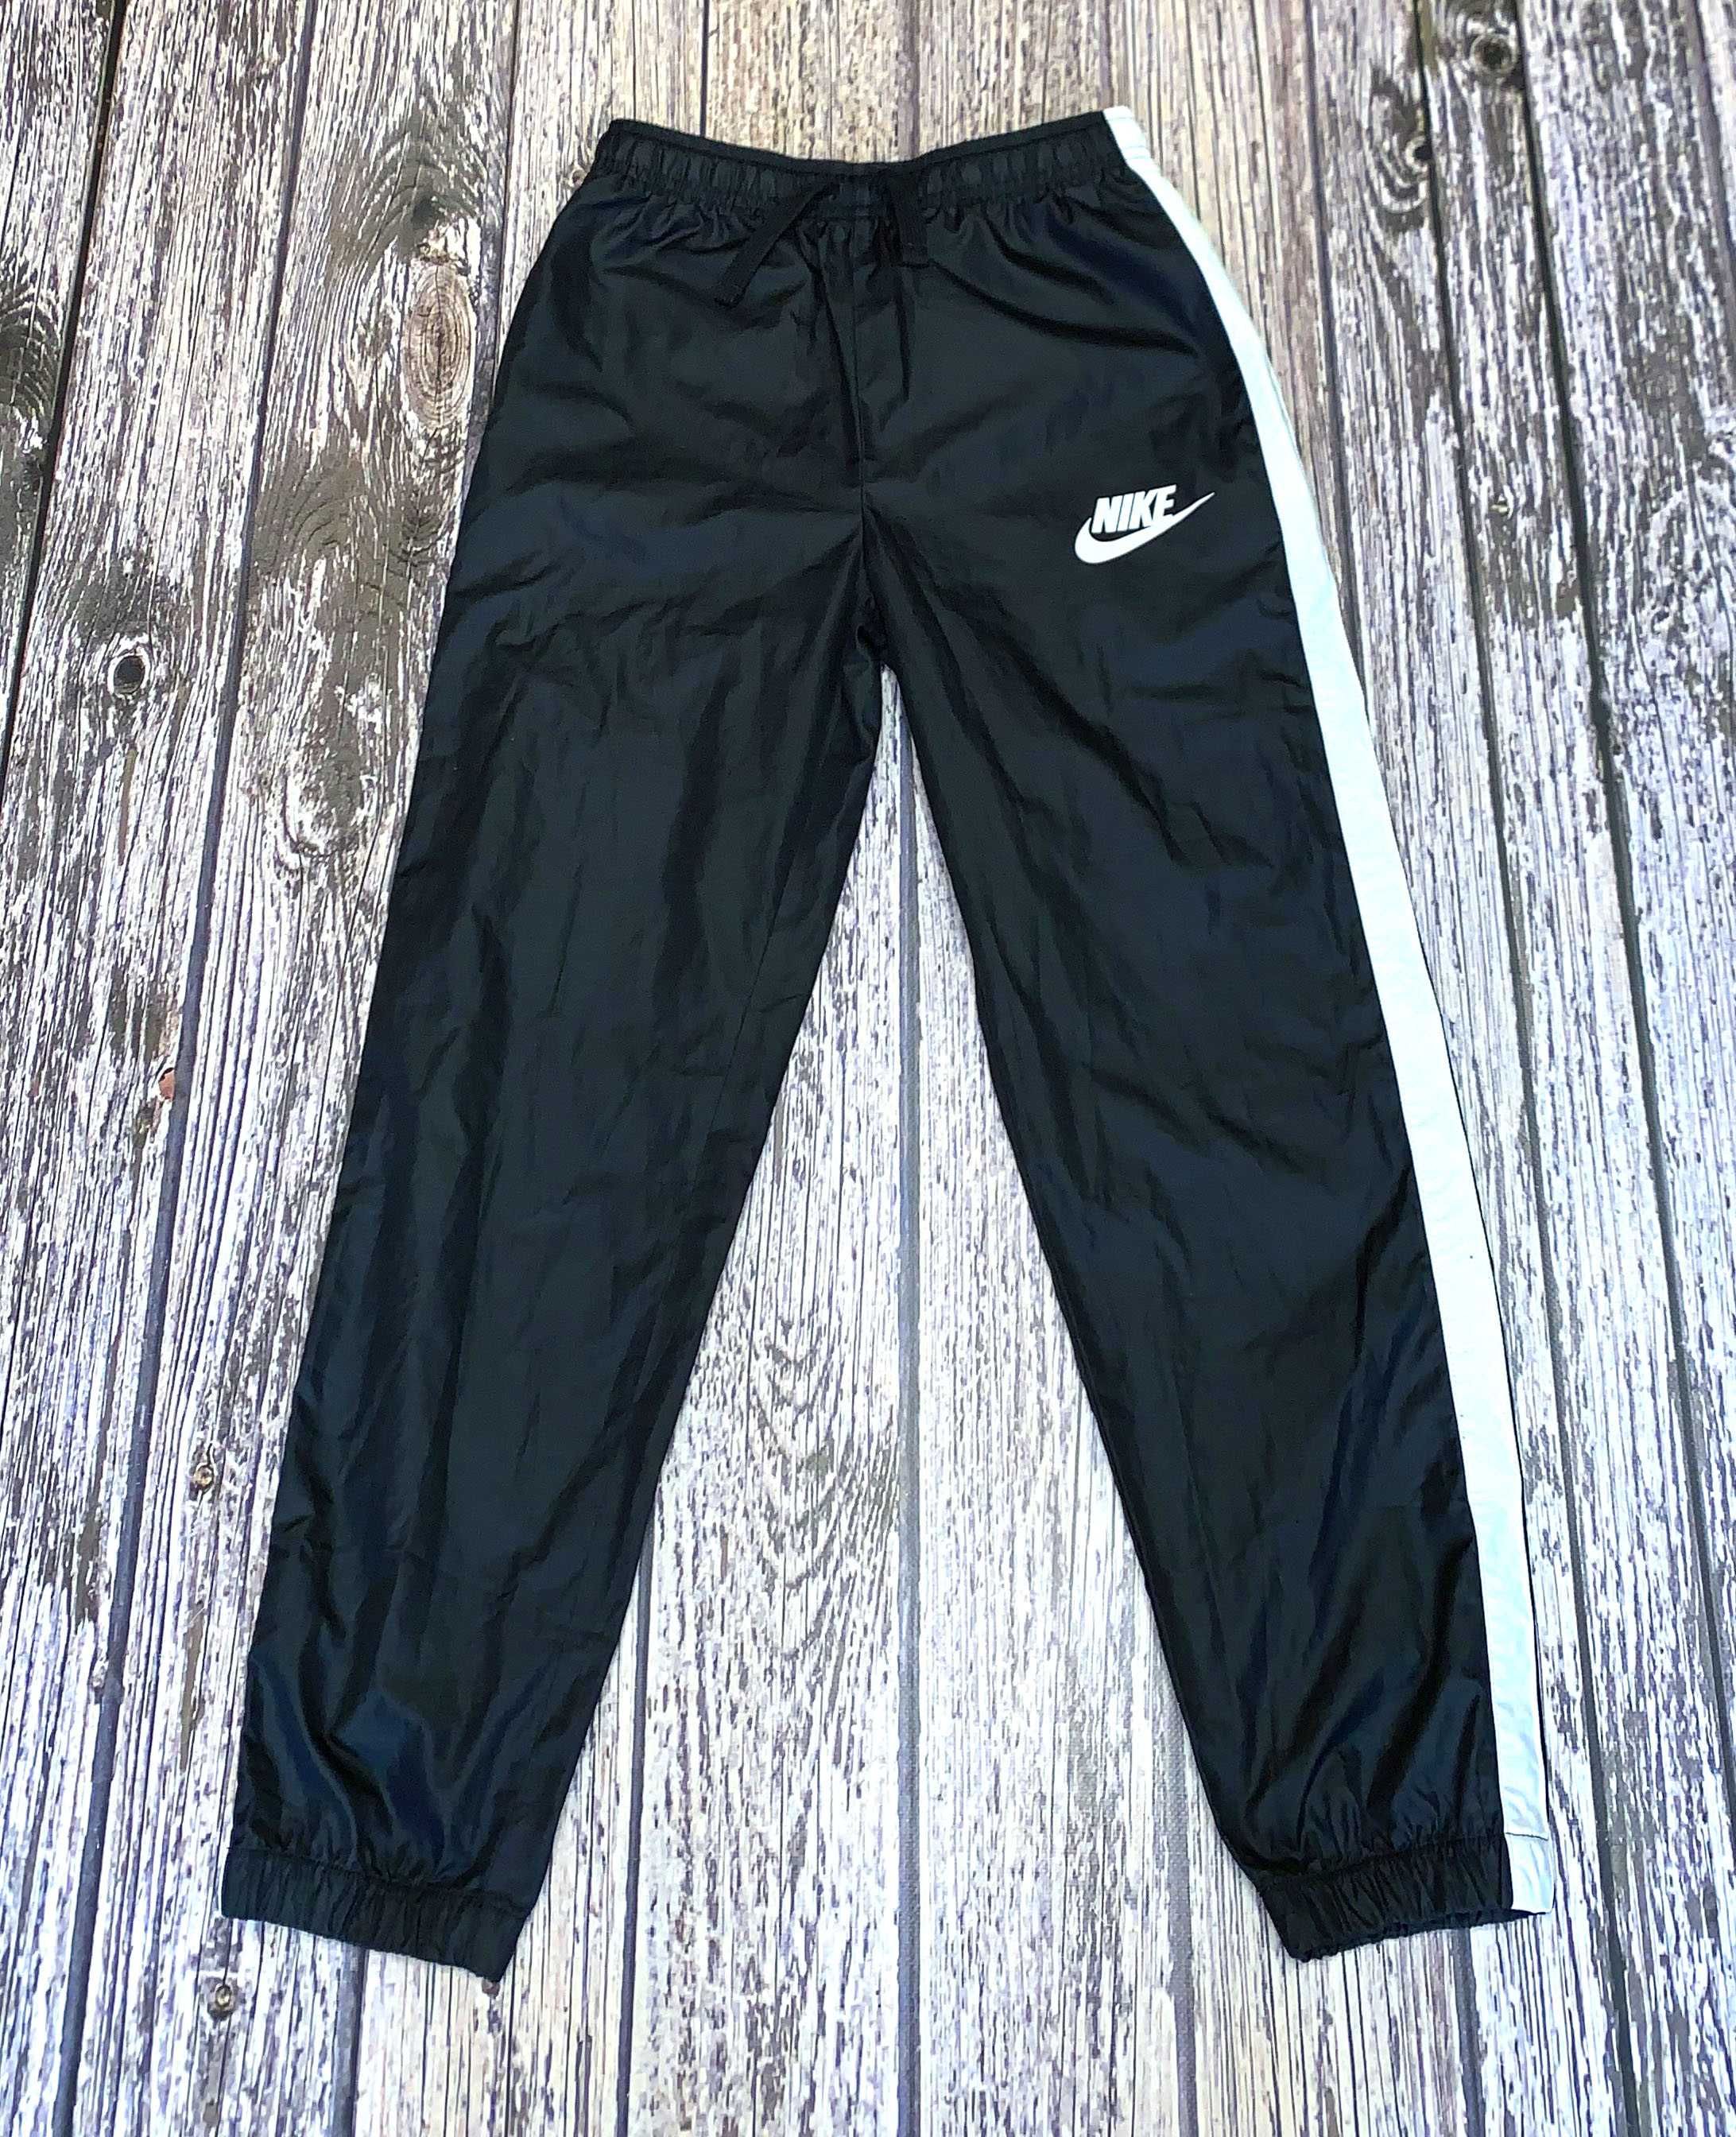 Непромокаемые брюки Nike для мальчика 11-12 лет, 146-152 см